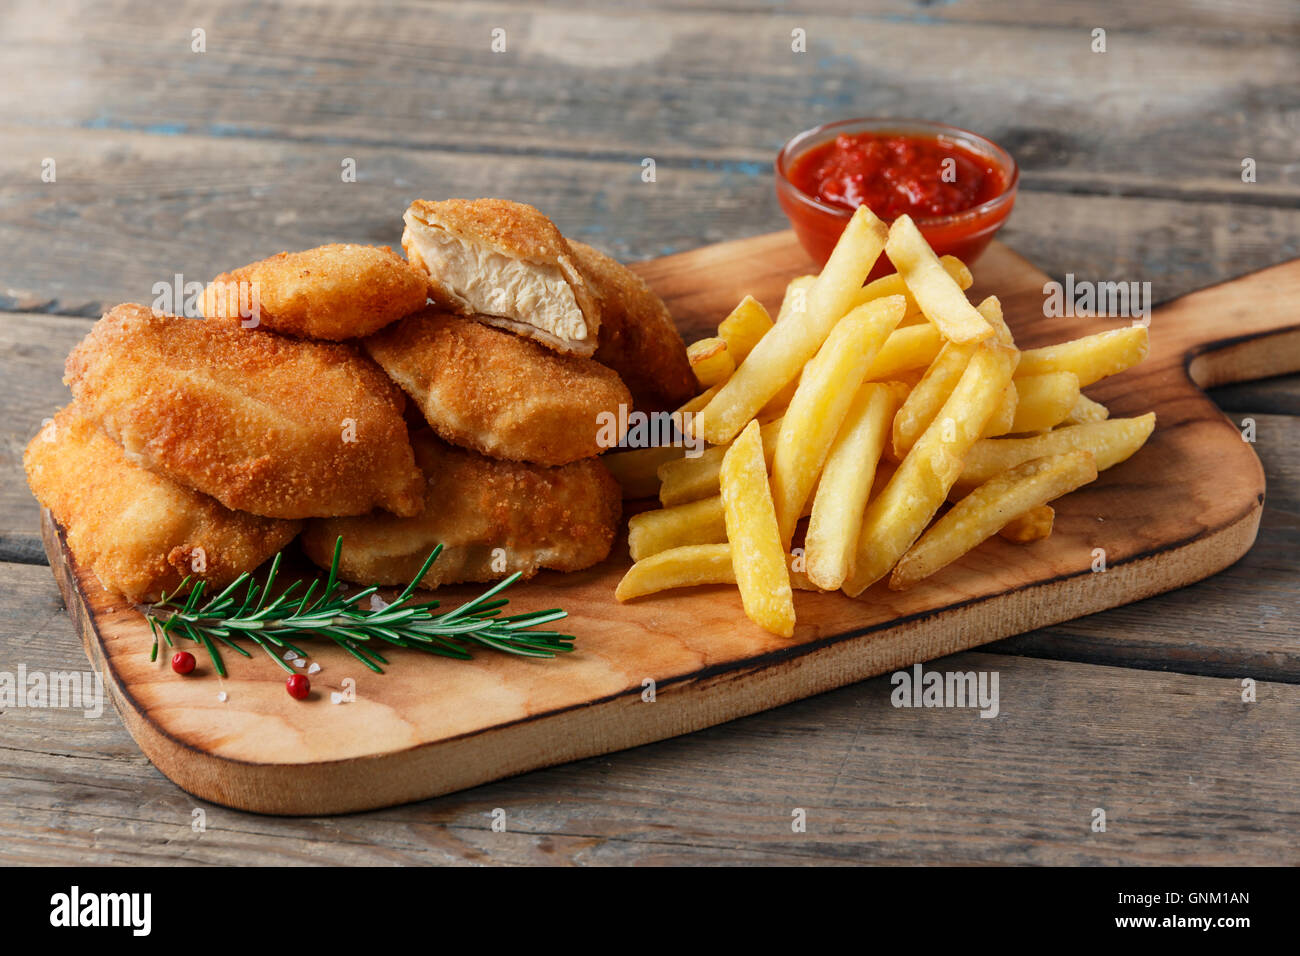 Nuggets de poulet frites au conseil avec sauce rouge Banque D'Images